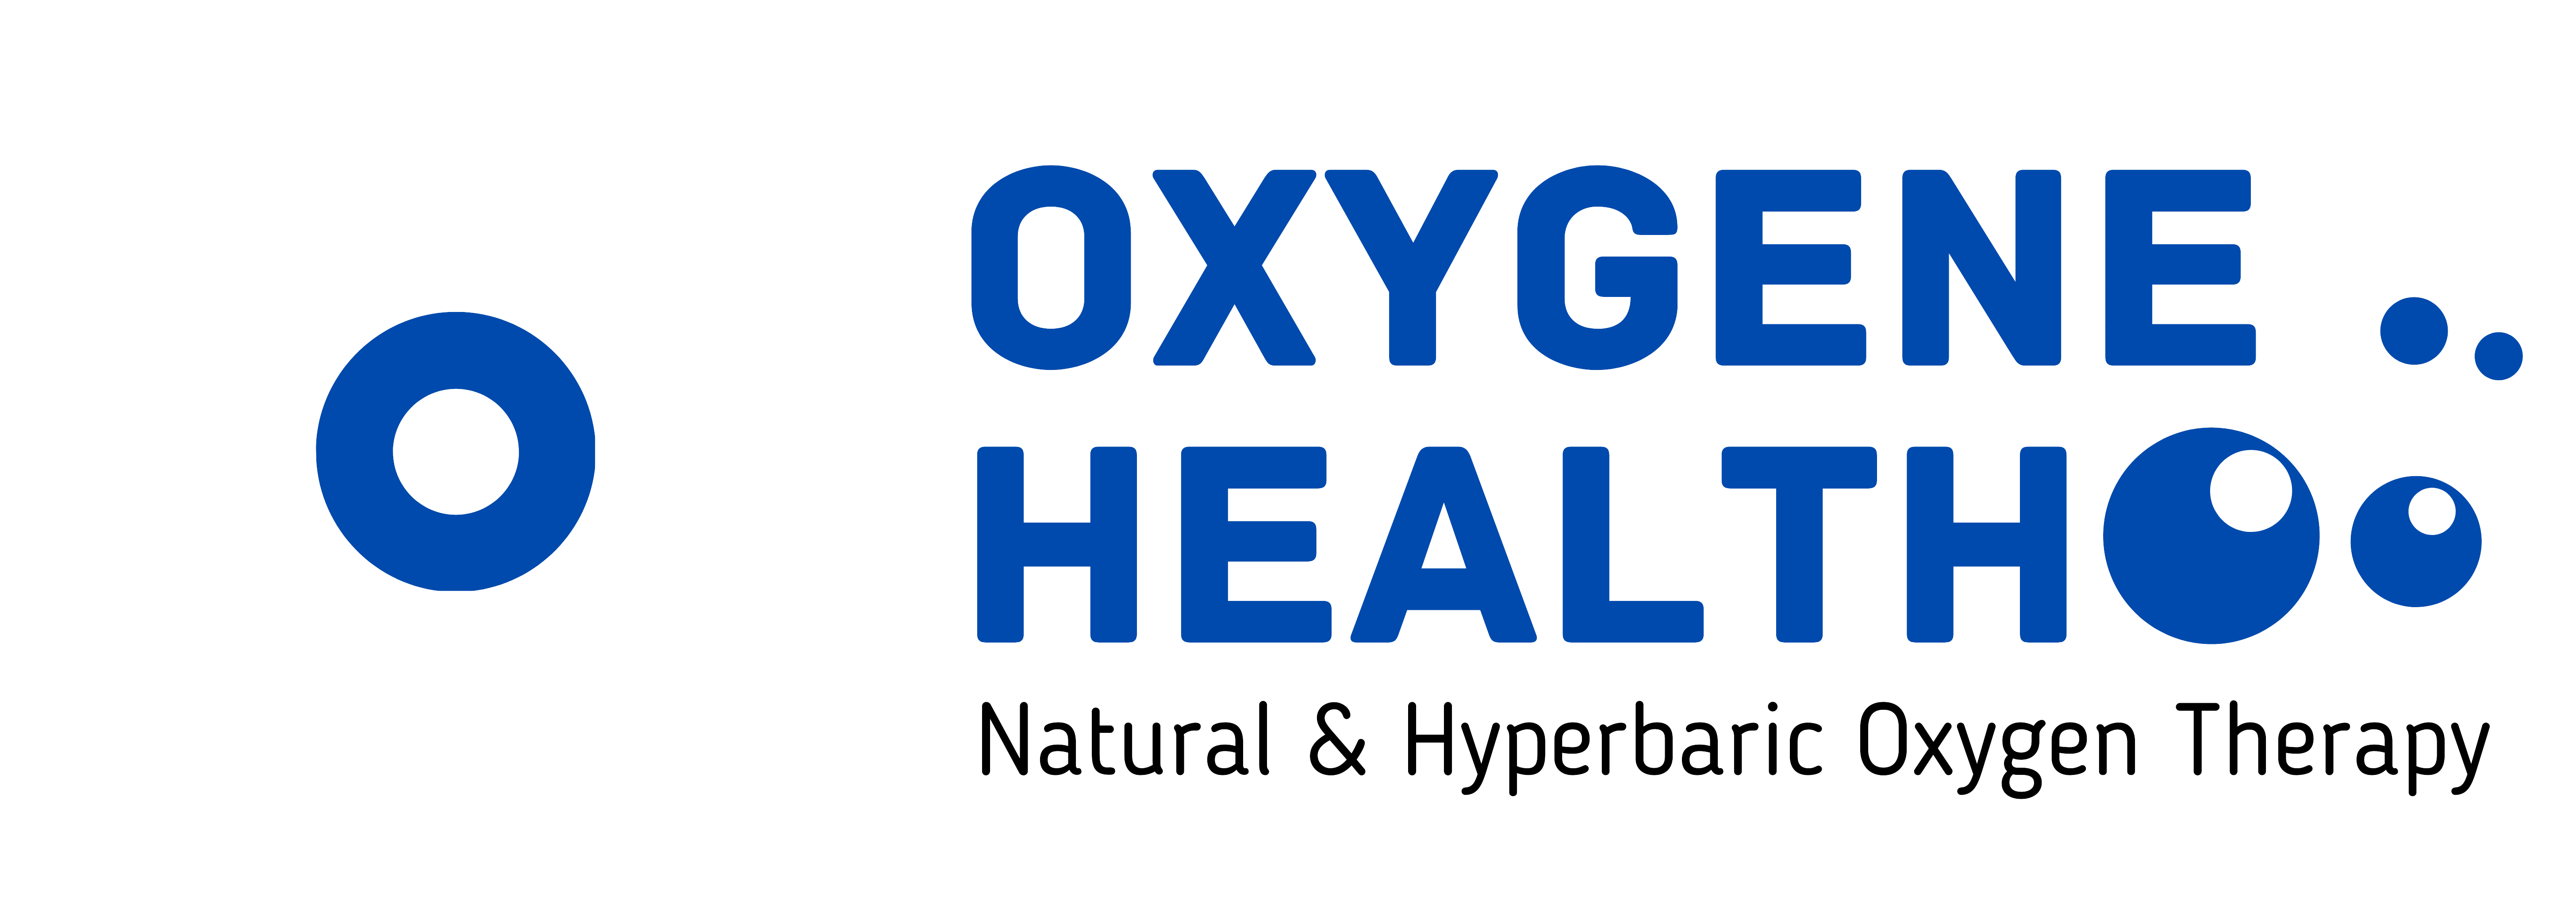 Oxygene Health Logo